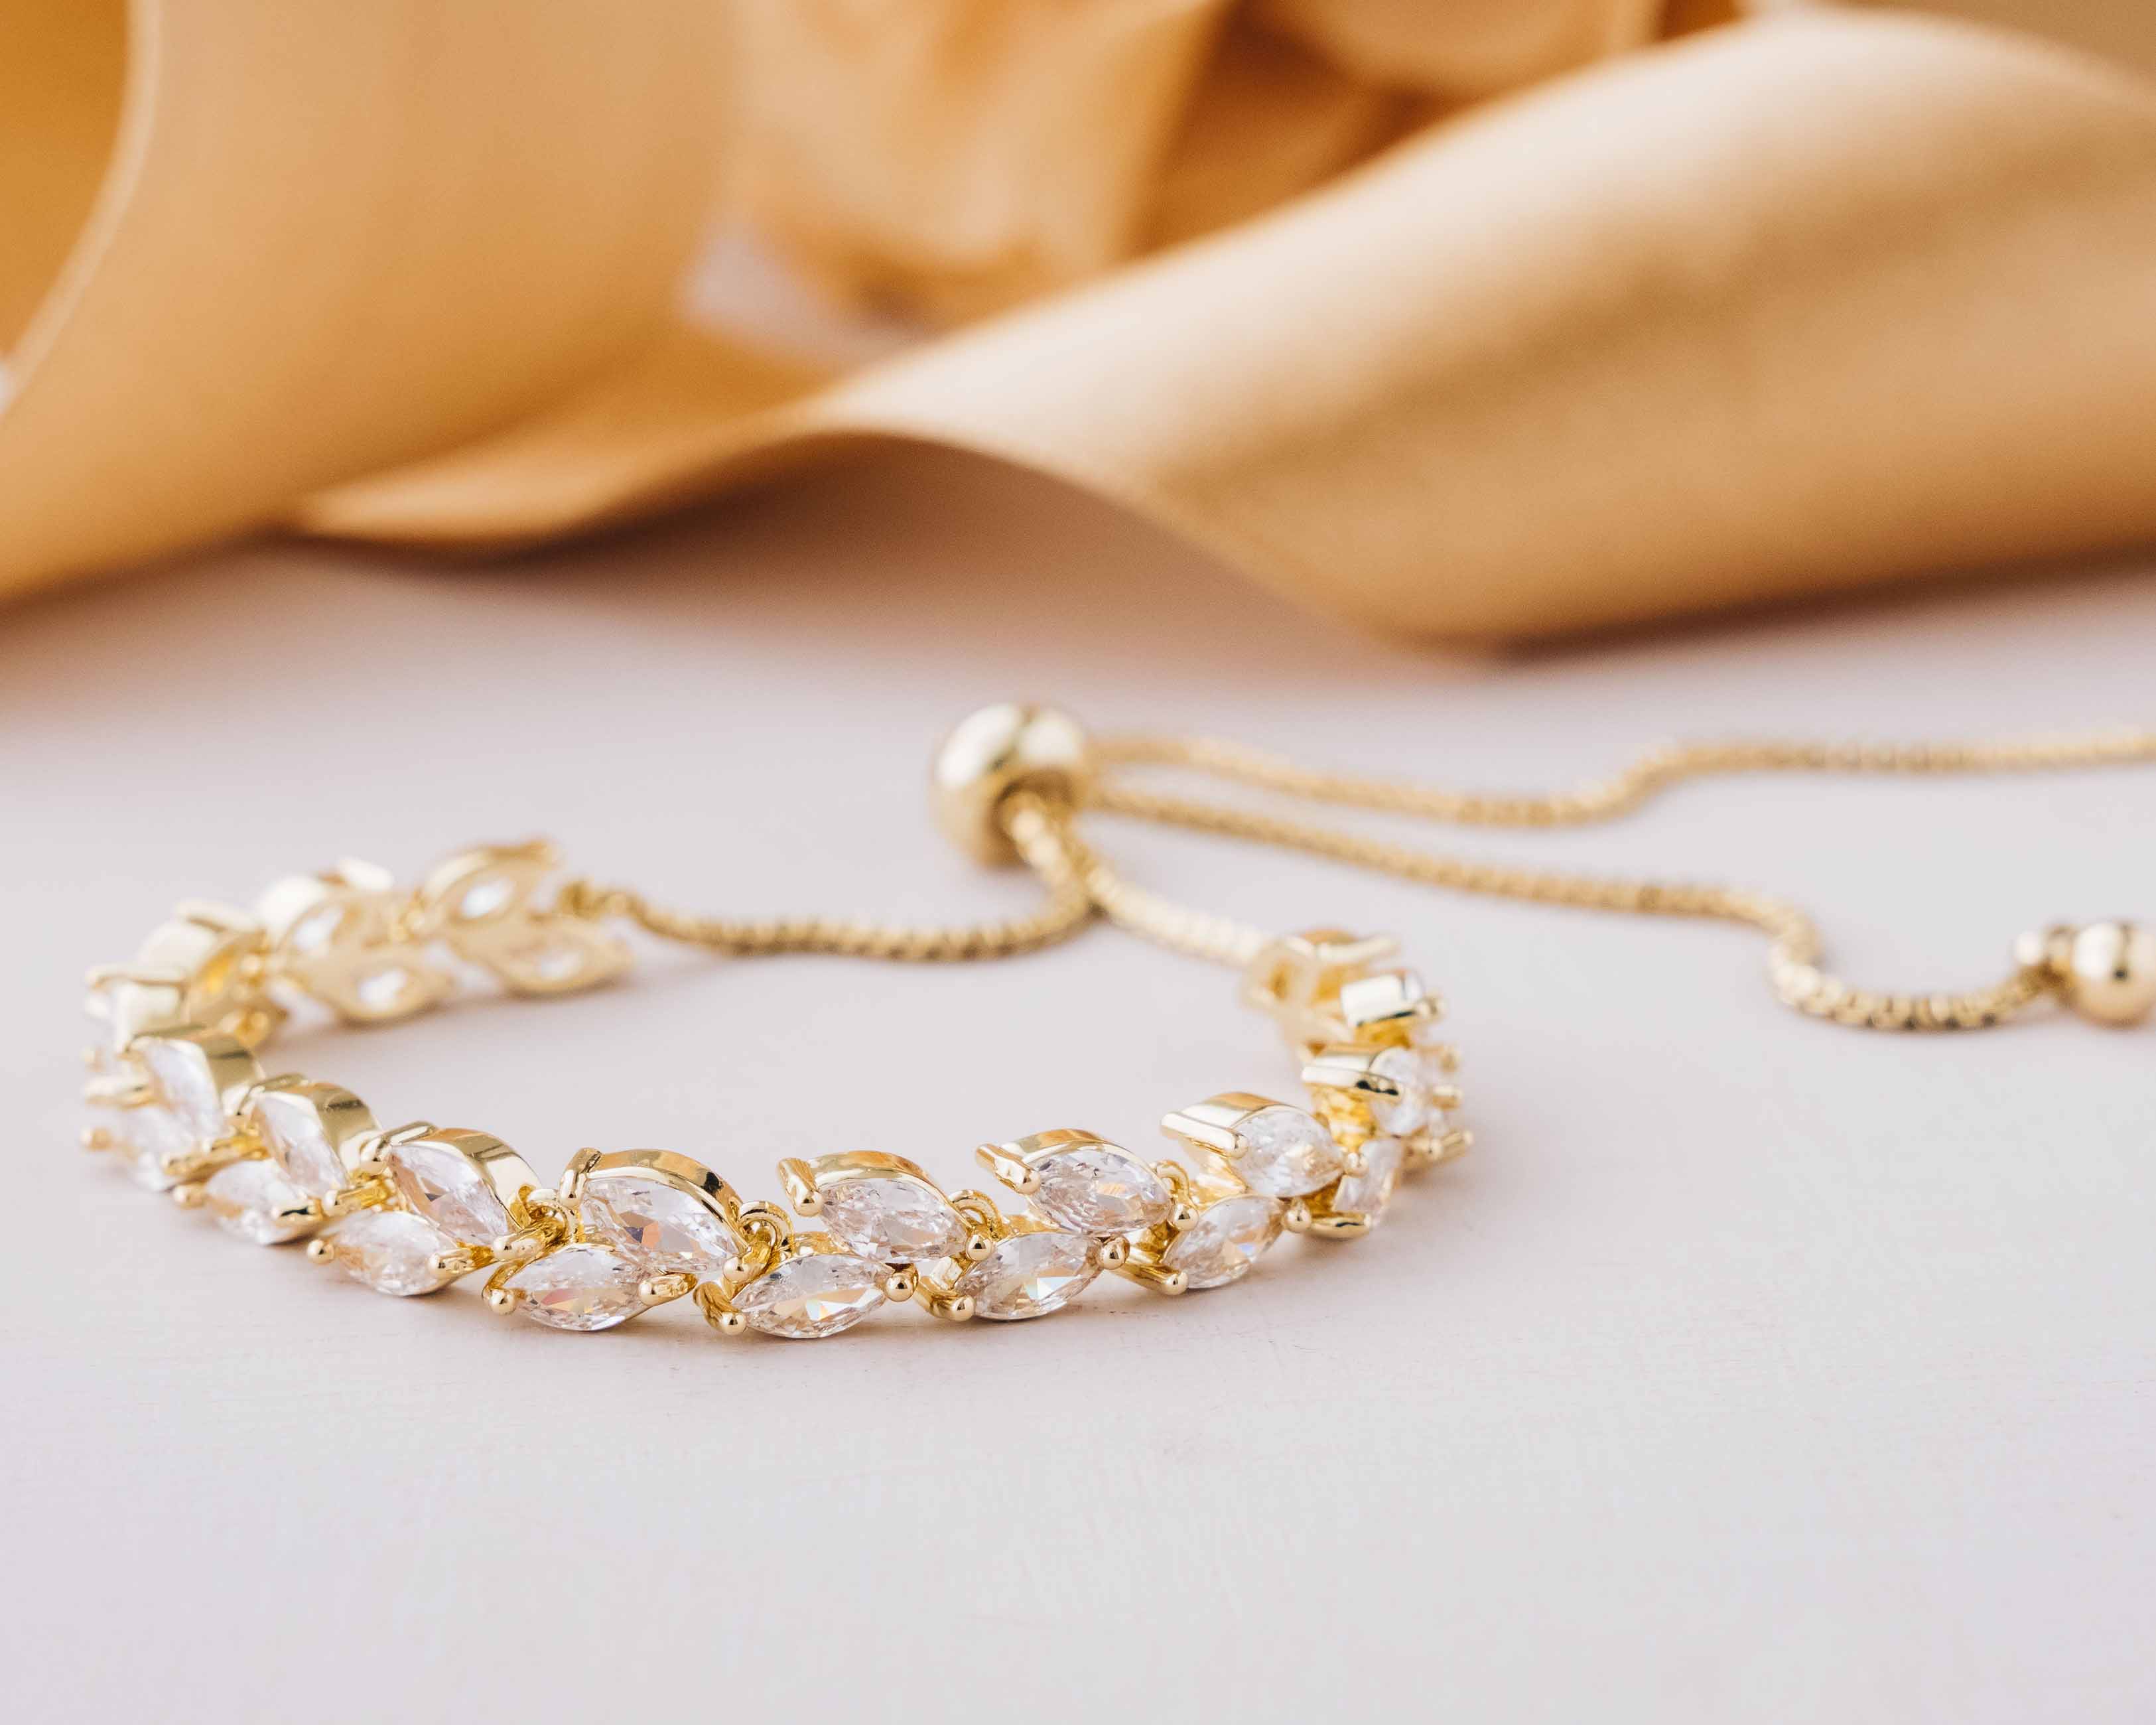 Verstellbares, zierliches Armband in Gold/Silber/Roségold